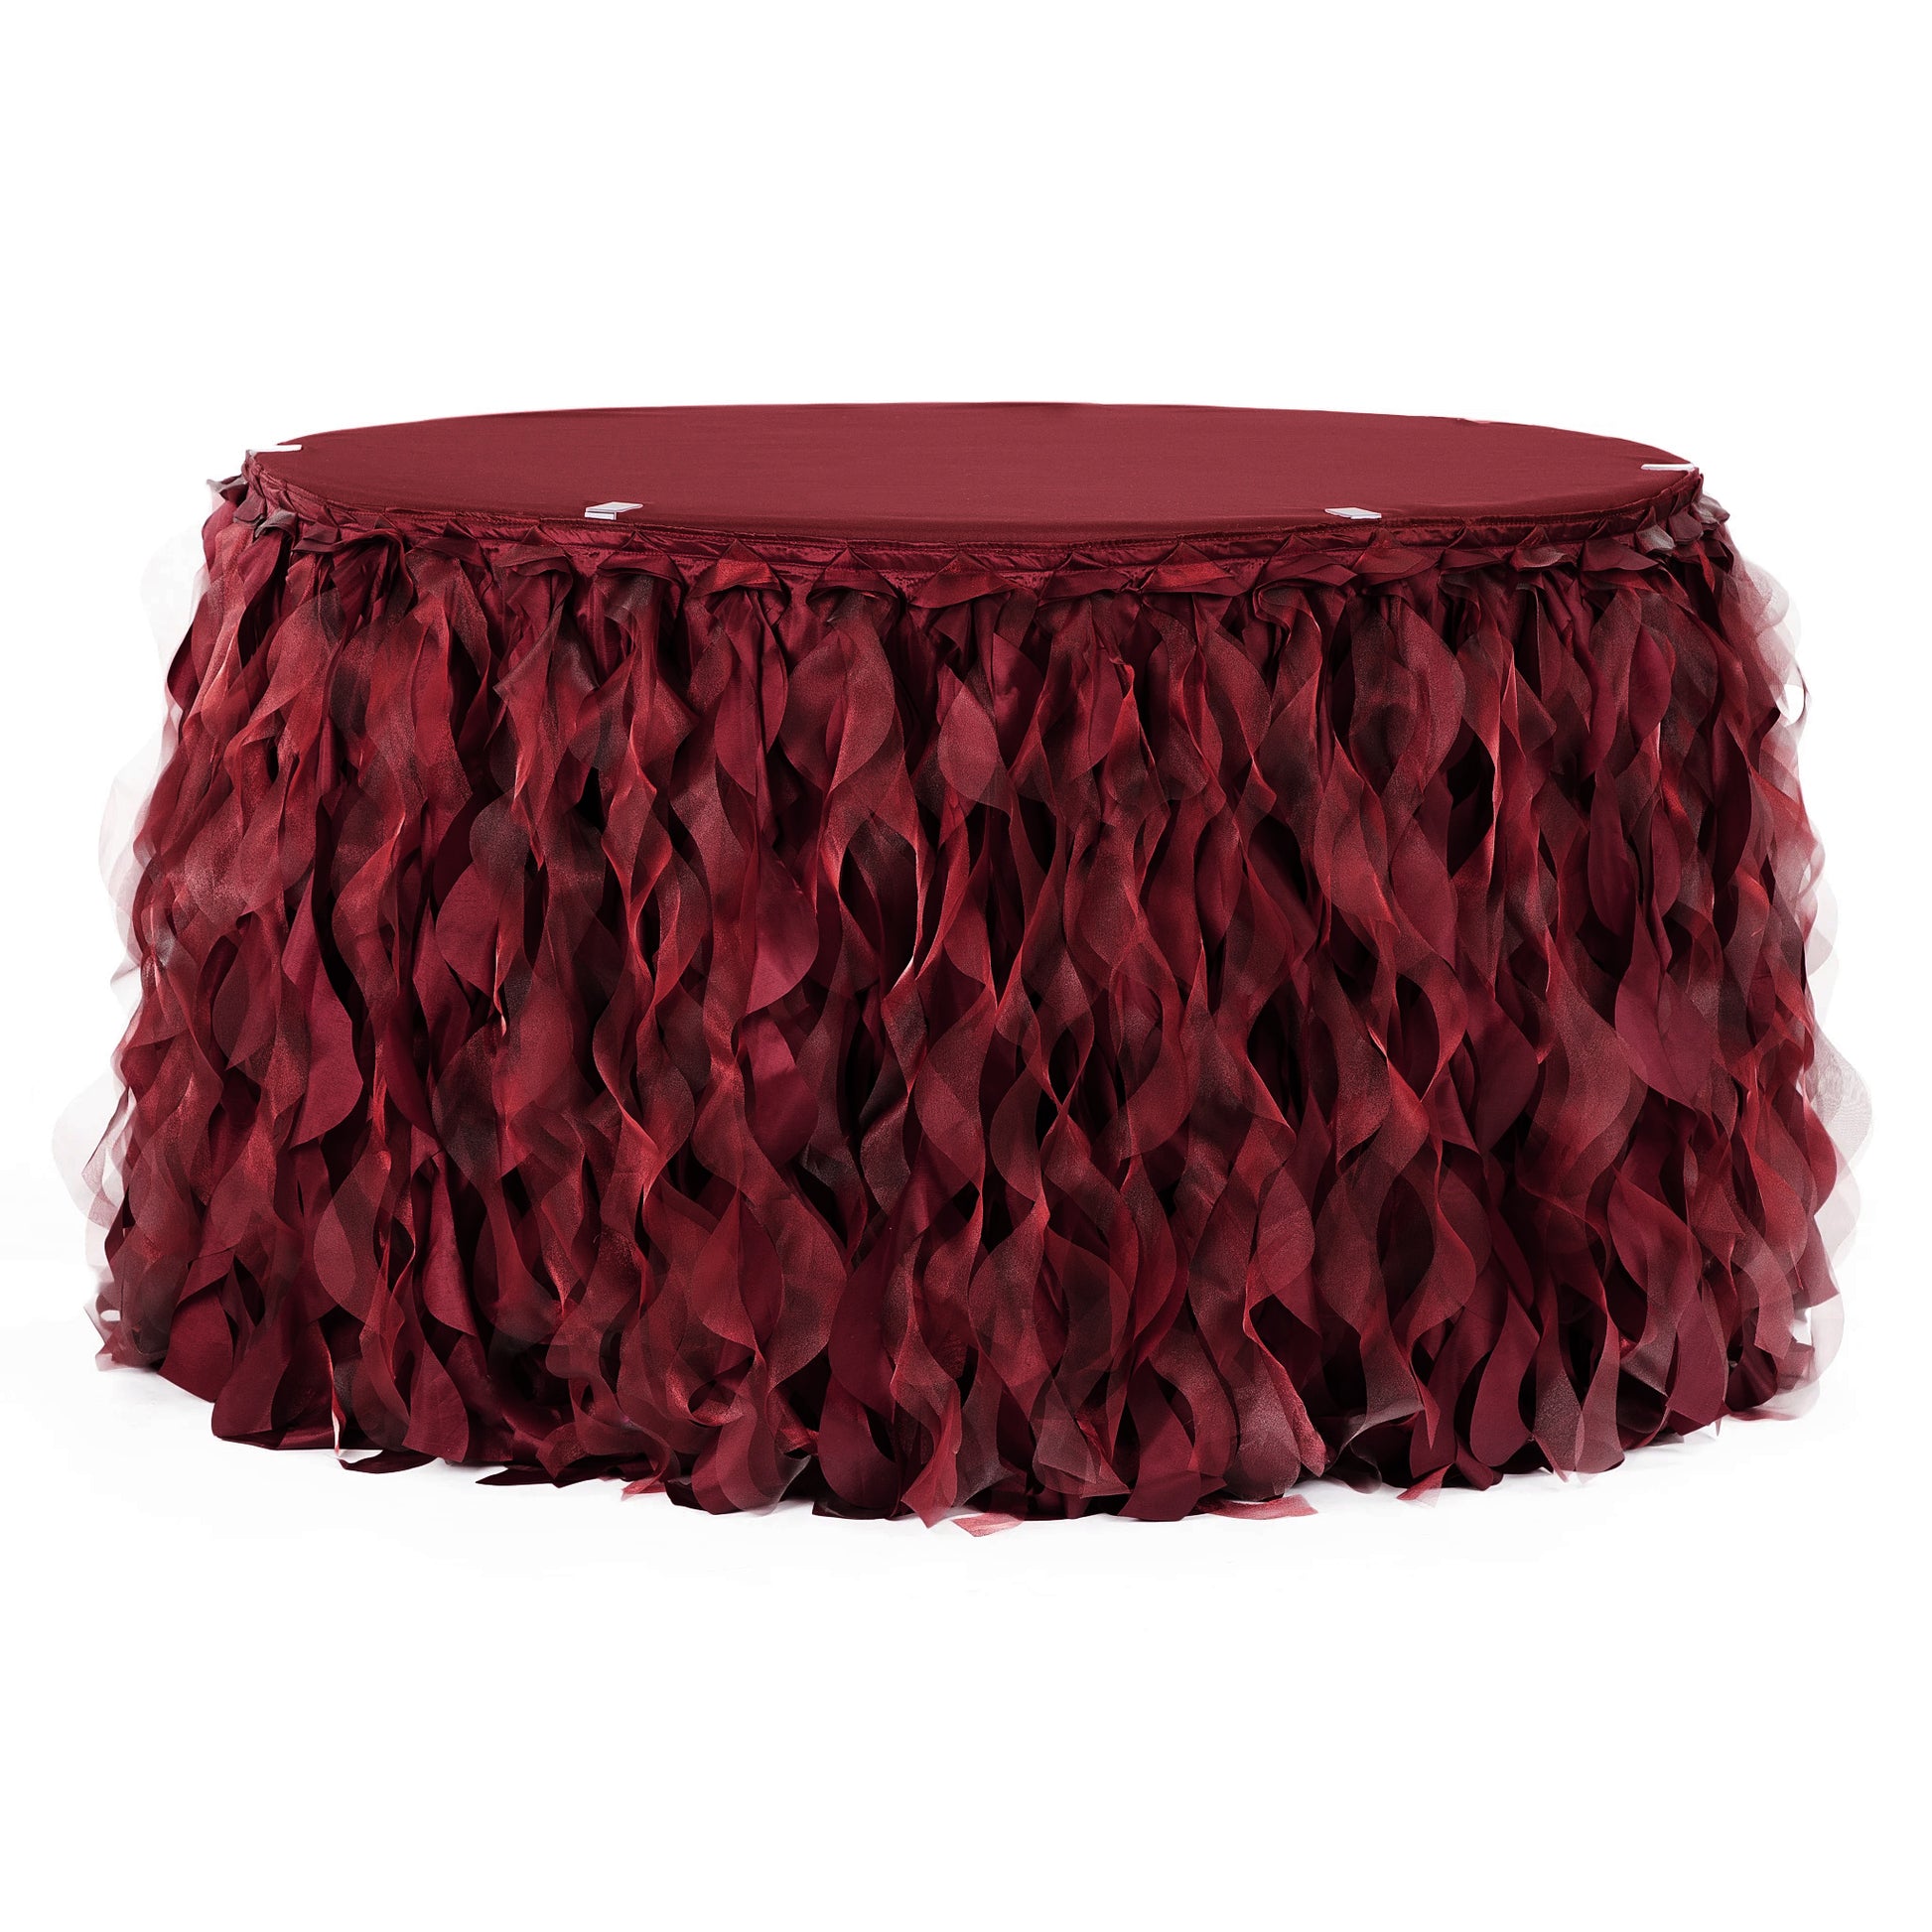 Curly Willow 14ft Table Skirt - Burgundy - CV Linens